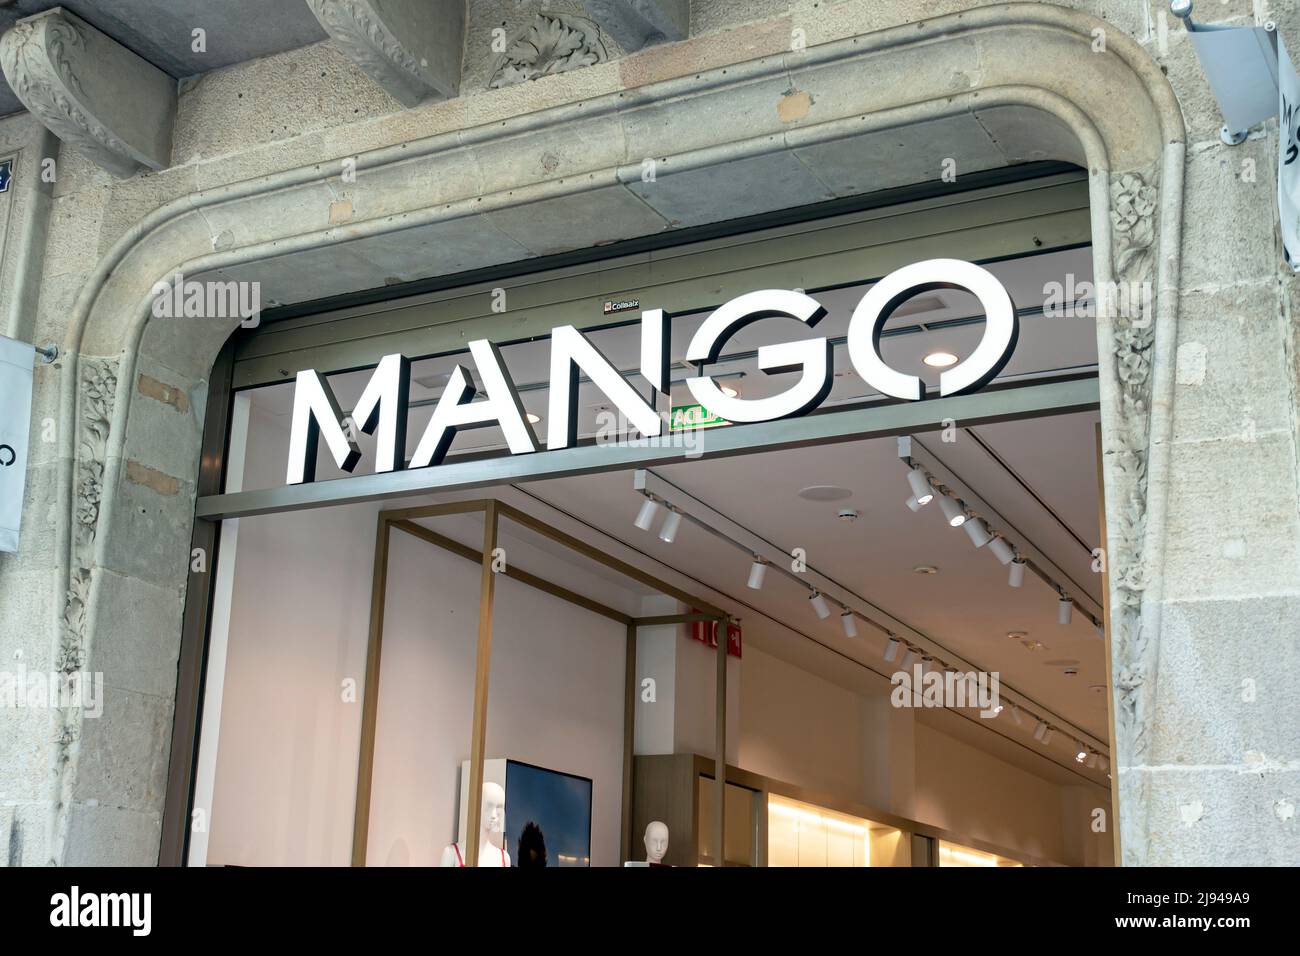 Barcelone, Espagne - 9 mai 2022 : panneau de la boutique Mango. Mango est une société espagnole de conception et de fabrication de vêtements. Banque D'Images